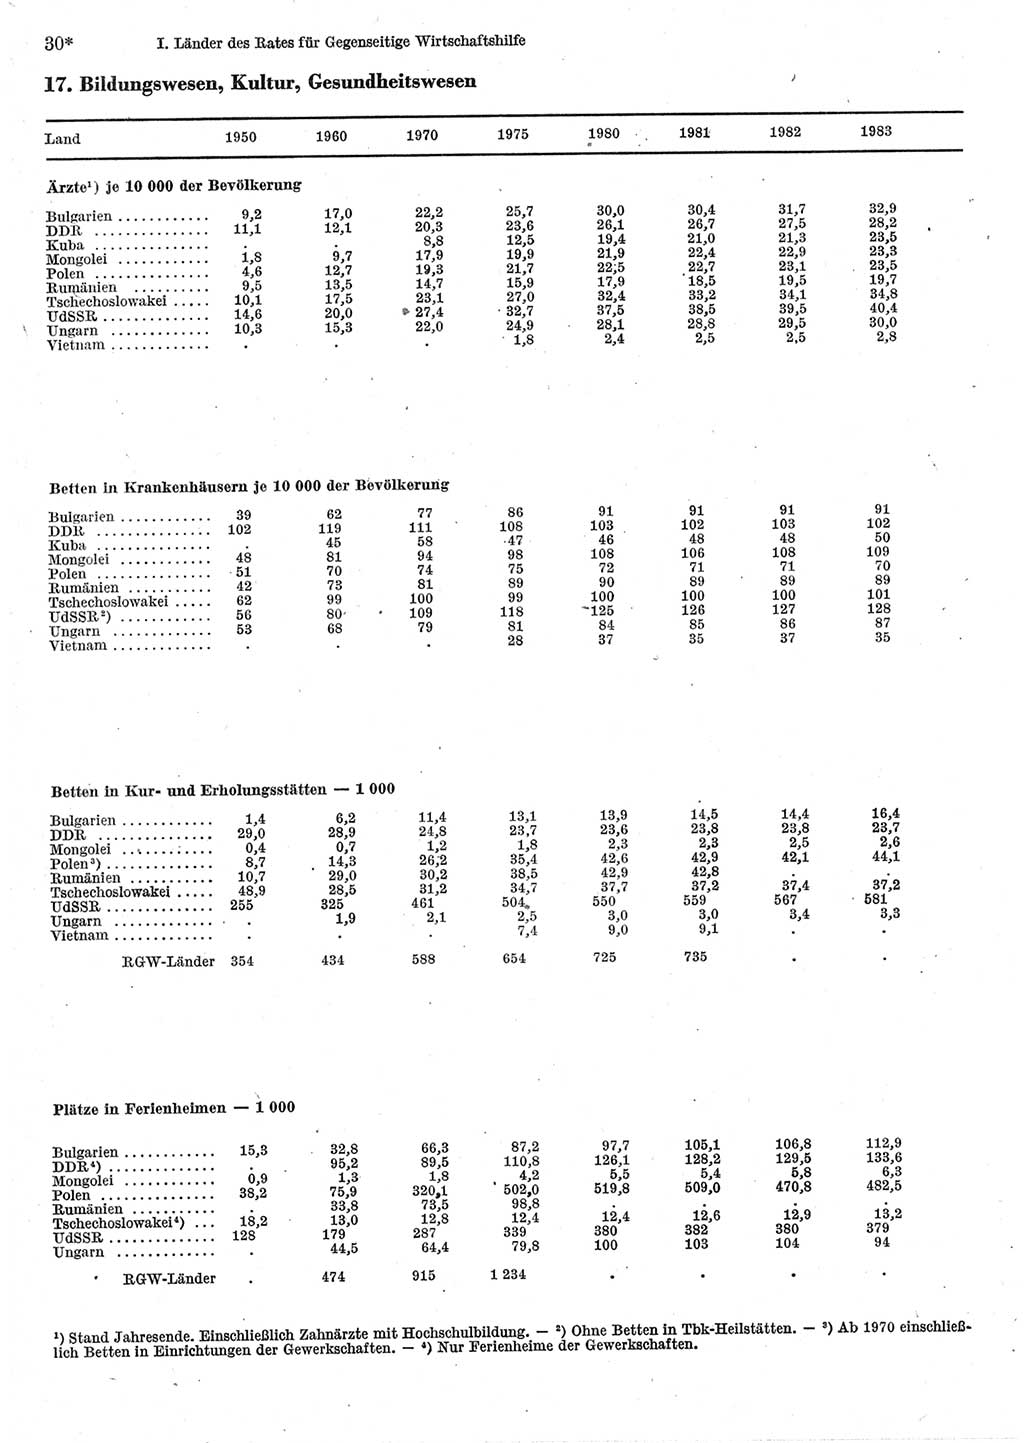 Statistisches Jahrbuch der Deutschen Demokratischen Republik (DDR) 1985, Seite 30 (Stat. Jb. DDR 1985, S. 30)